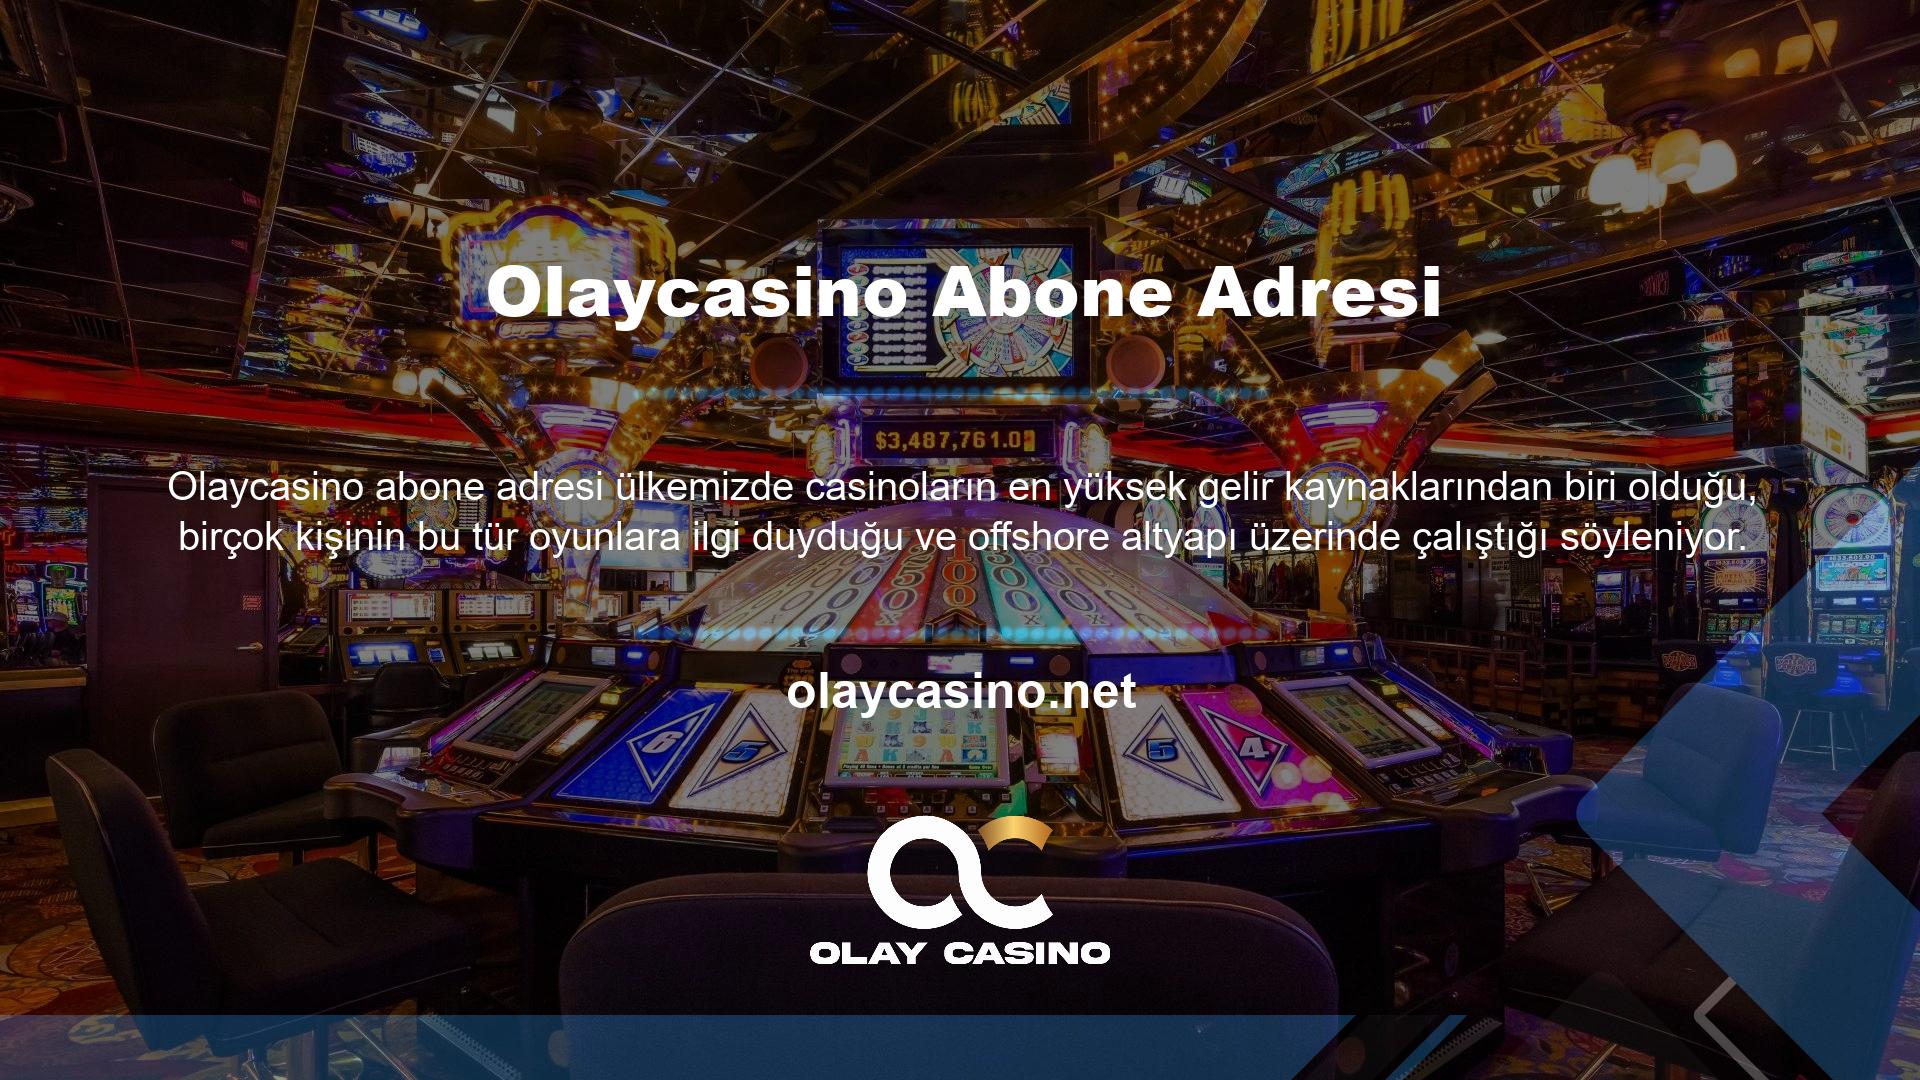 Oyuncular tarafından sevilen birçok oyun katılımcısının adresi olan Olaycasino sitesi gelişmeye devam ediyor